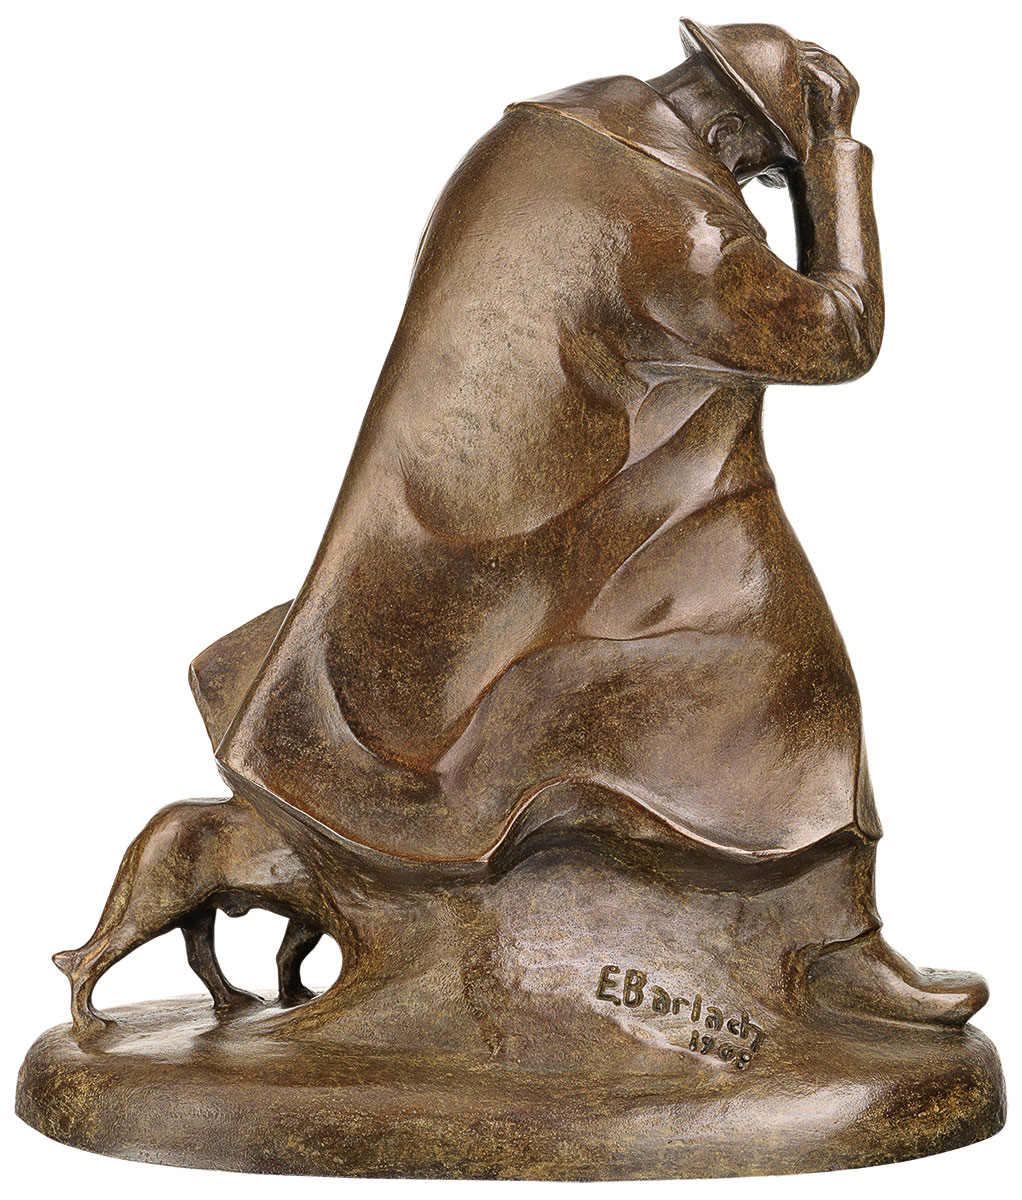 Skulptur "Schäfer im Sturm" (1908), Reduktion in Bronze von Ernst Barlach